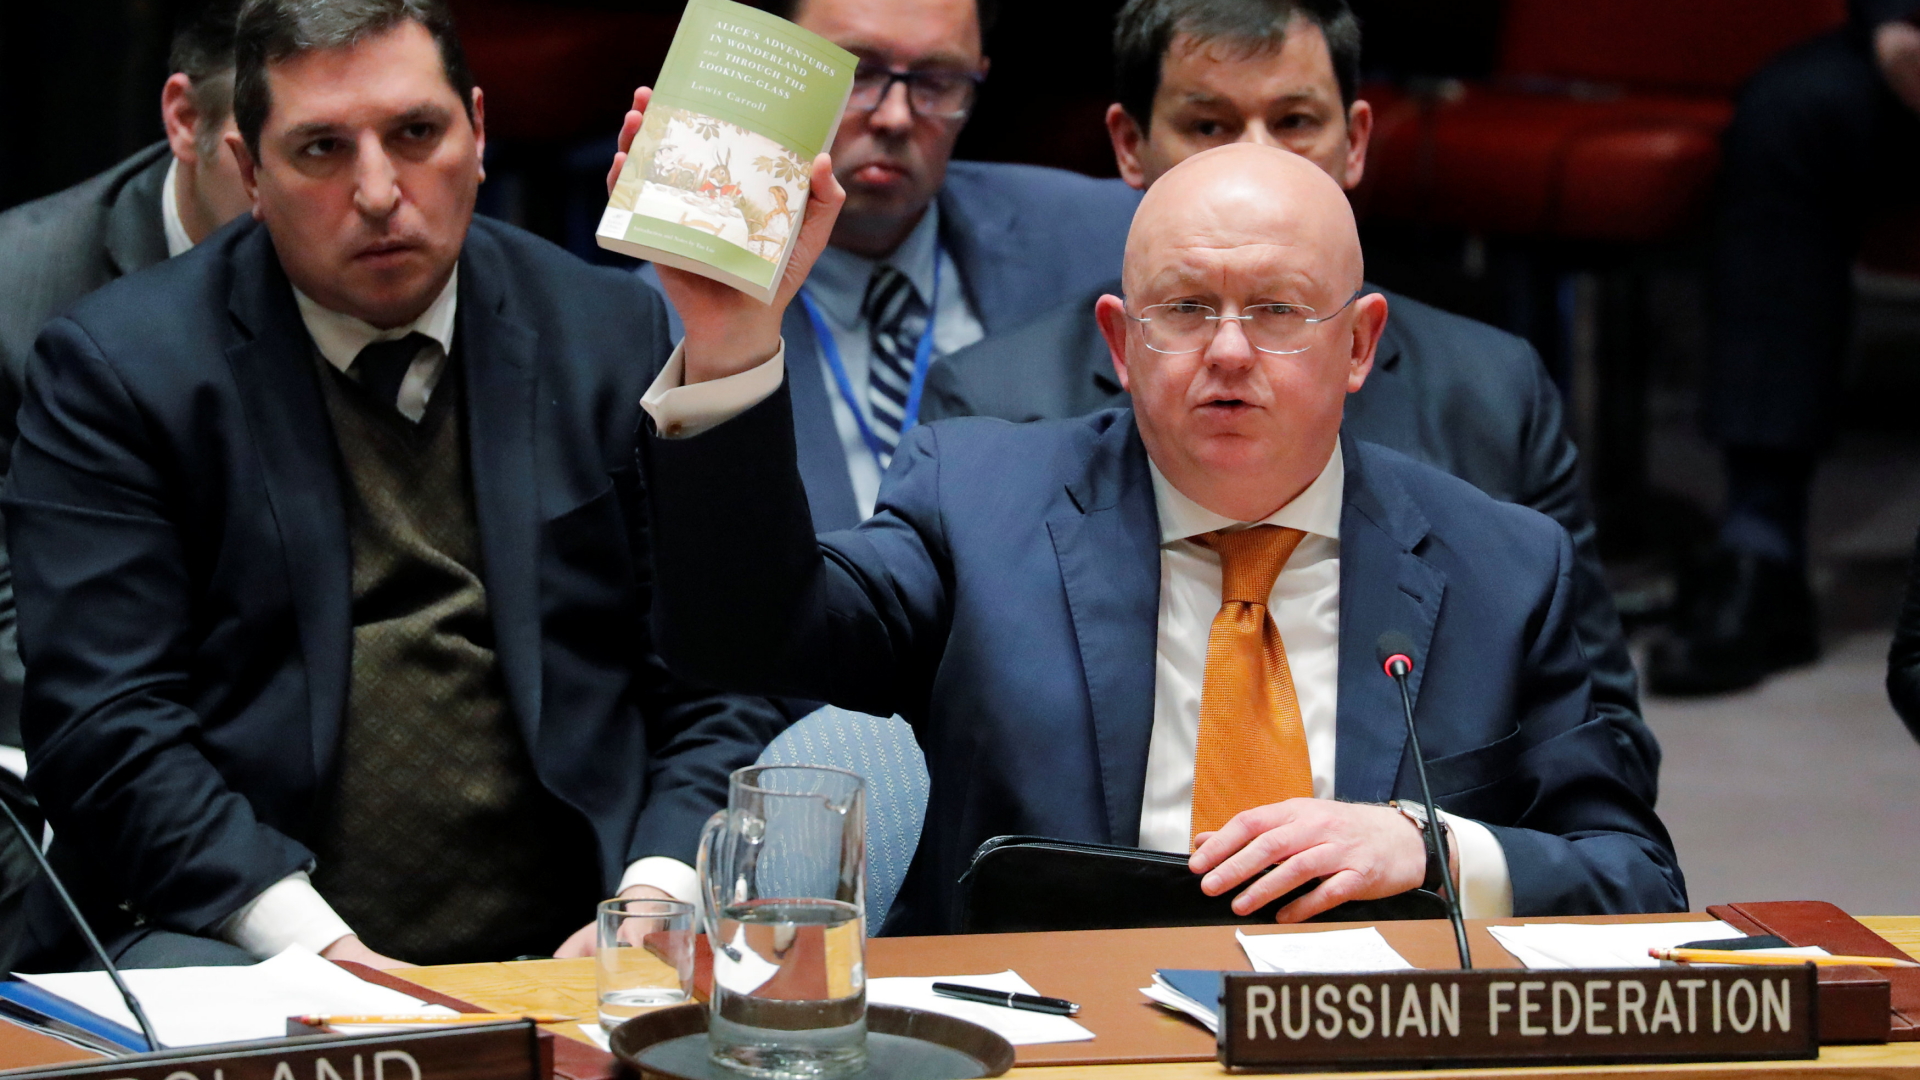 Der russische UN-Botschafter Nebentsja hält in einer Sitzung des Sicherheitsrats das Buch "Alice im Wunderland" hoch. | REUTERS